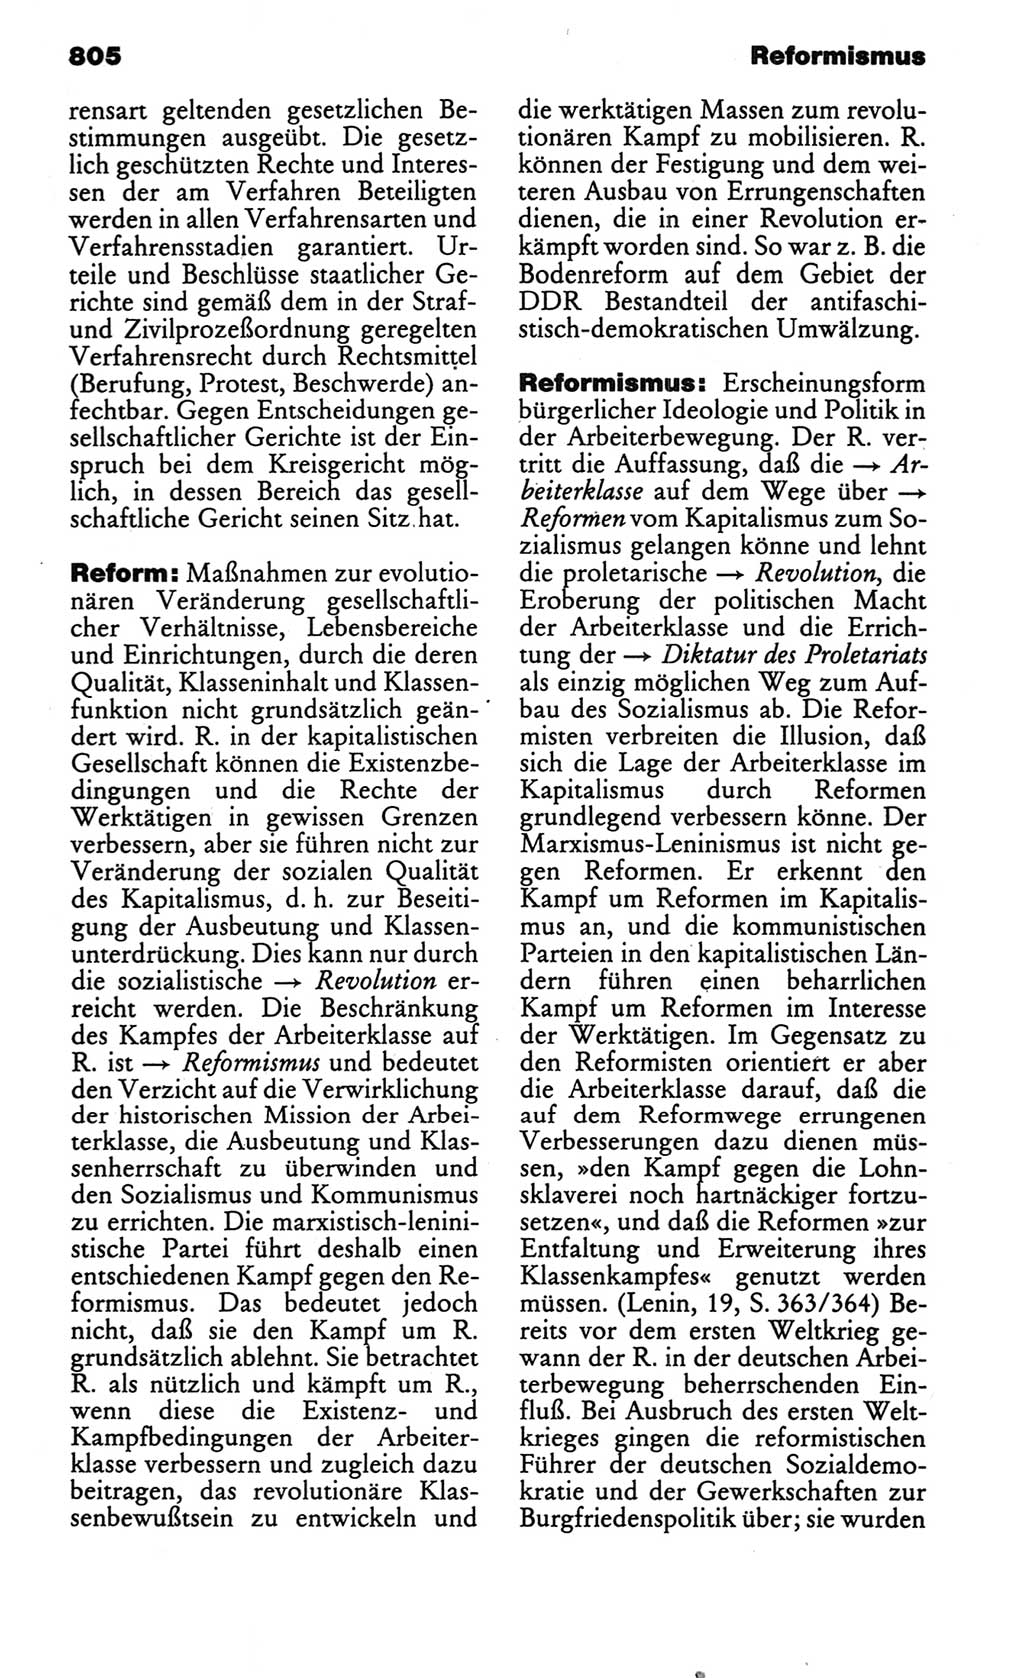 Kleines politisches Wörterbuch [Deutsche Demokratische Republik (DDR)] 1986, Seite 805 (Kl. pol. Wb. DDR 1986, S. 805)